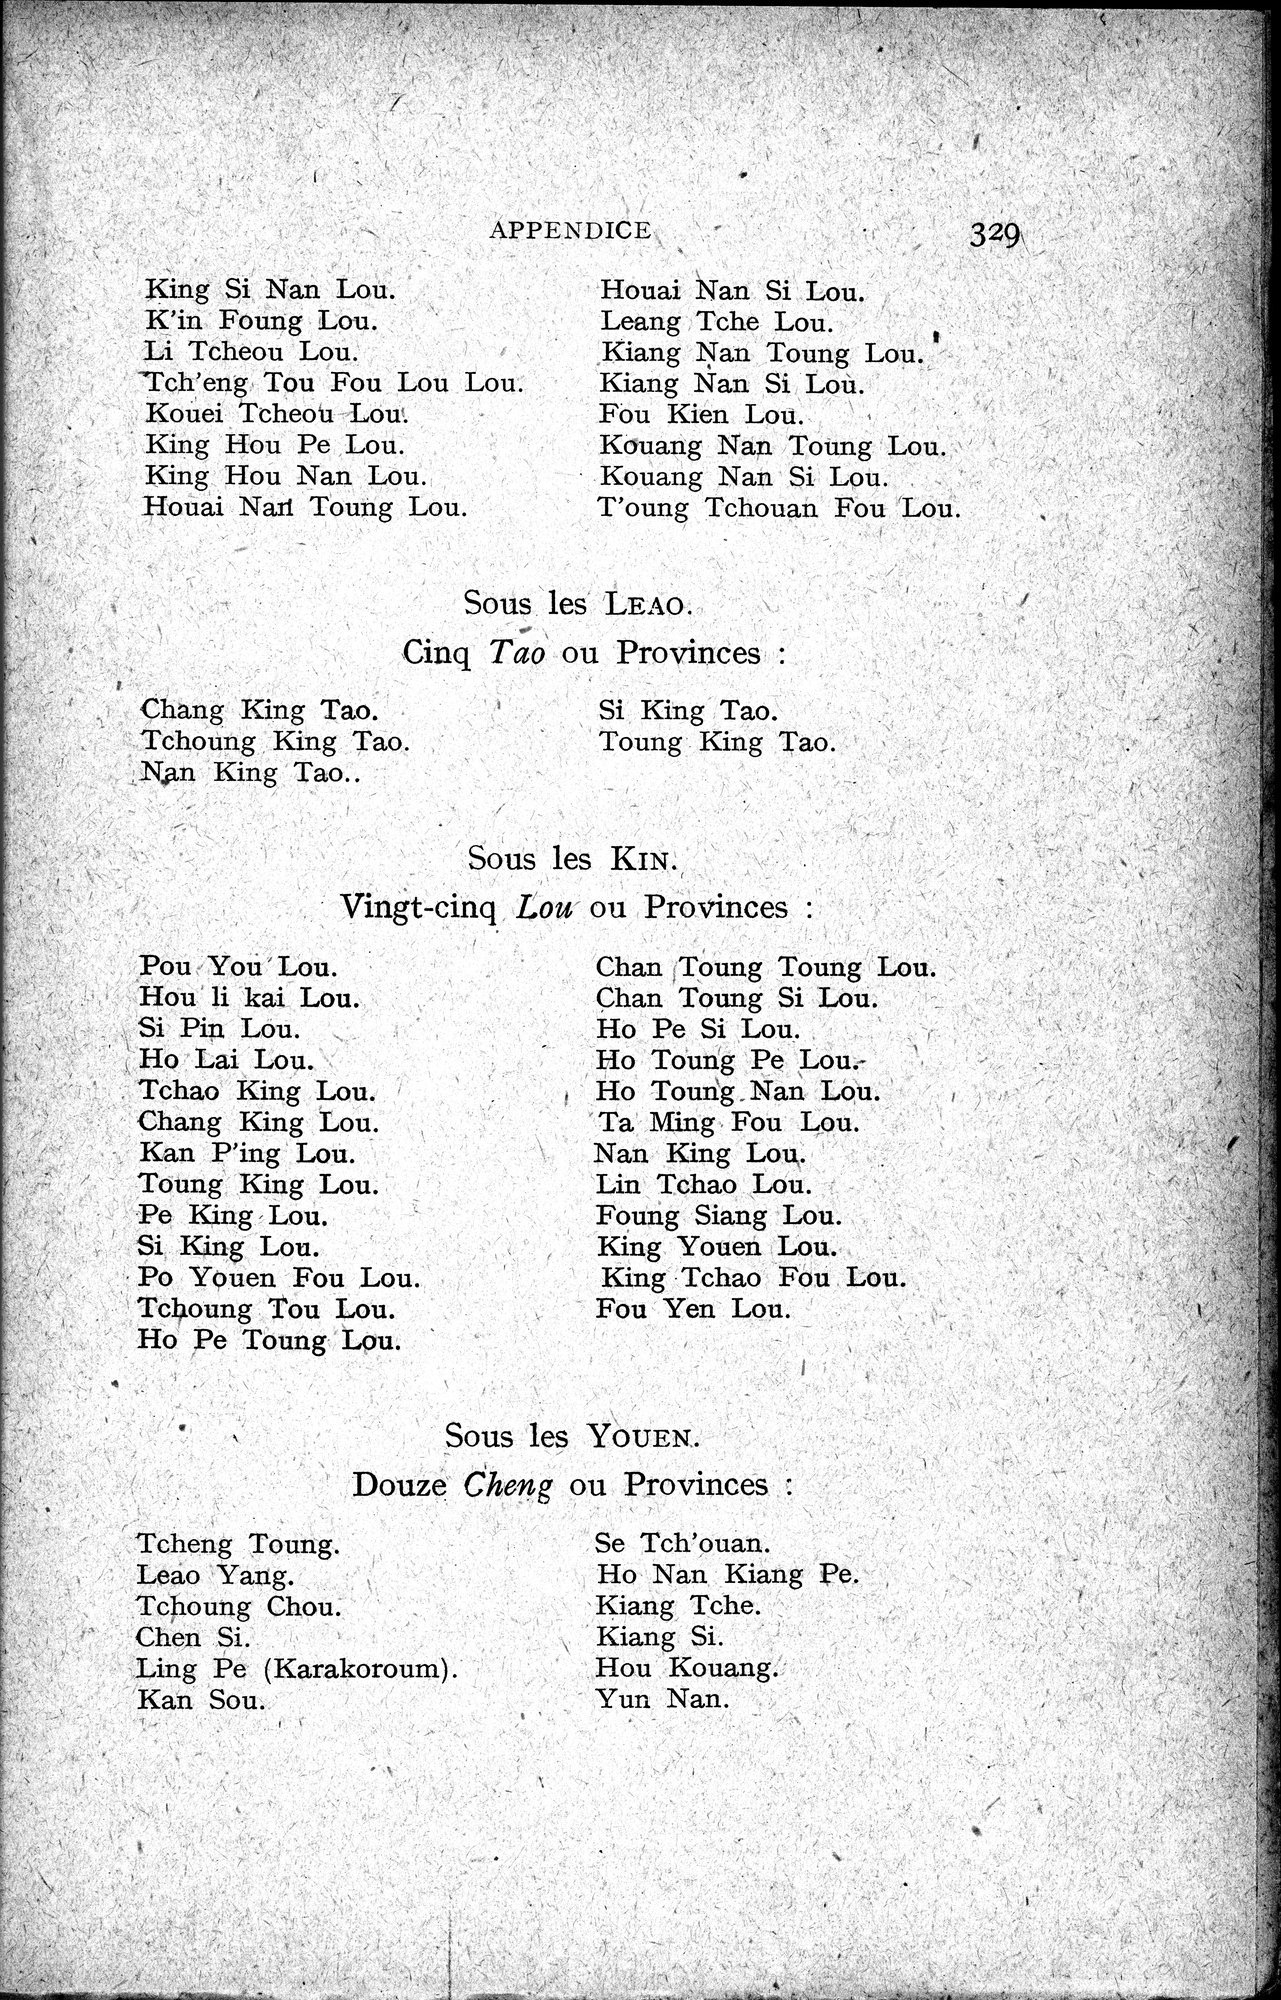 Histoire Générale de la Chine : vol.4 / Page 331 (Grayscale High Resolution Image)